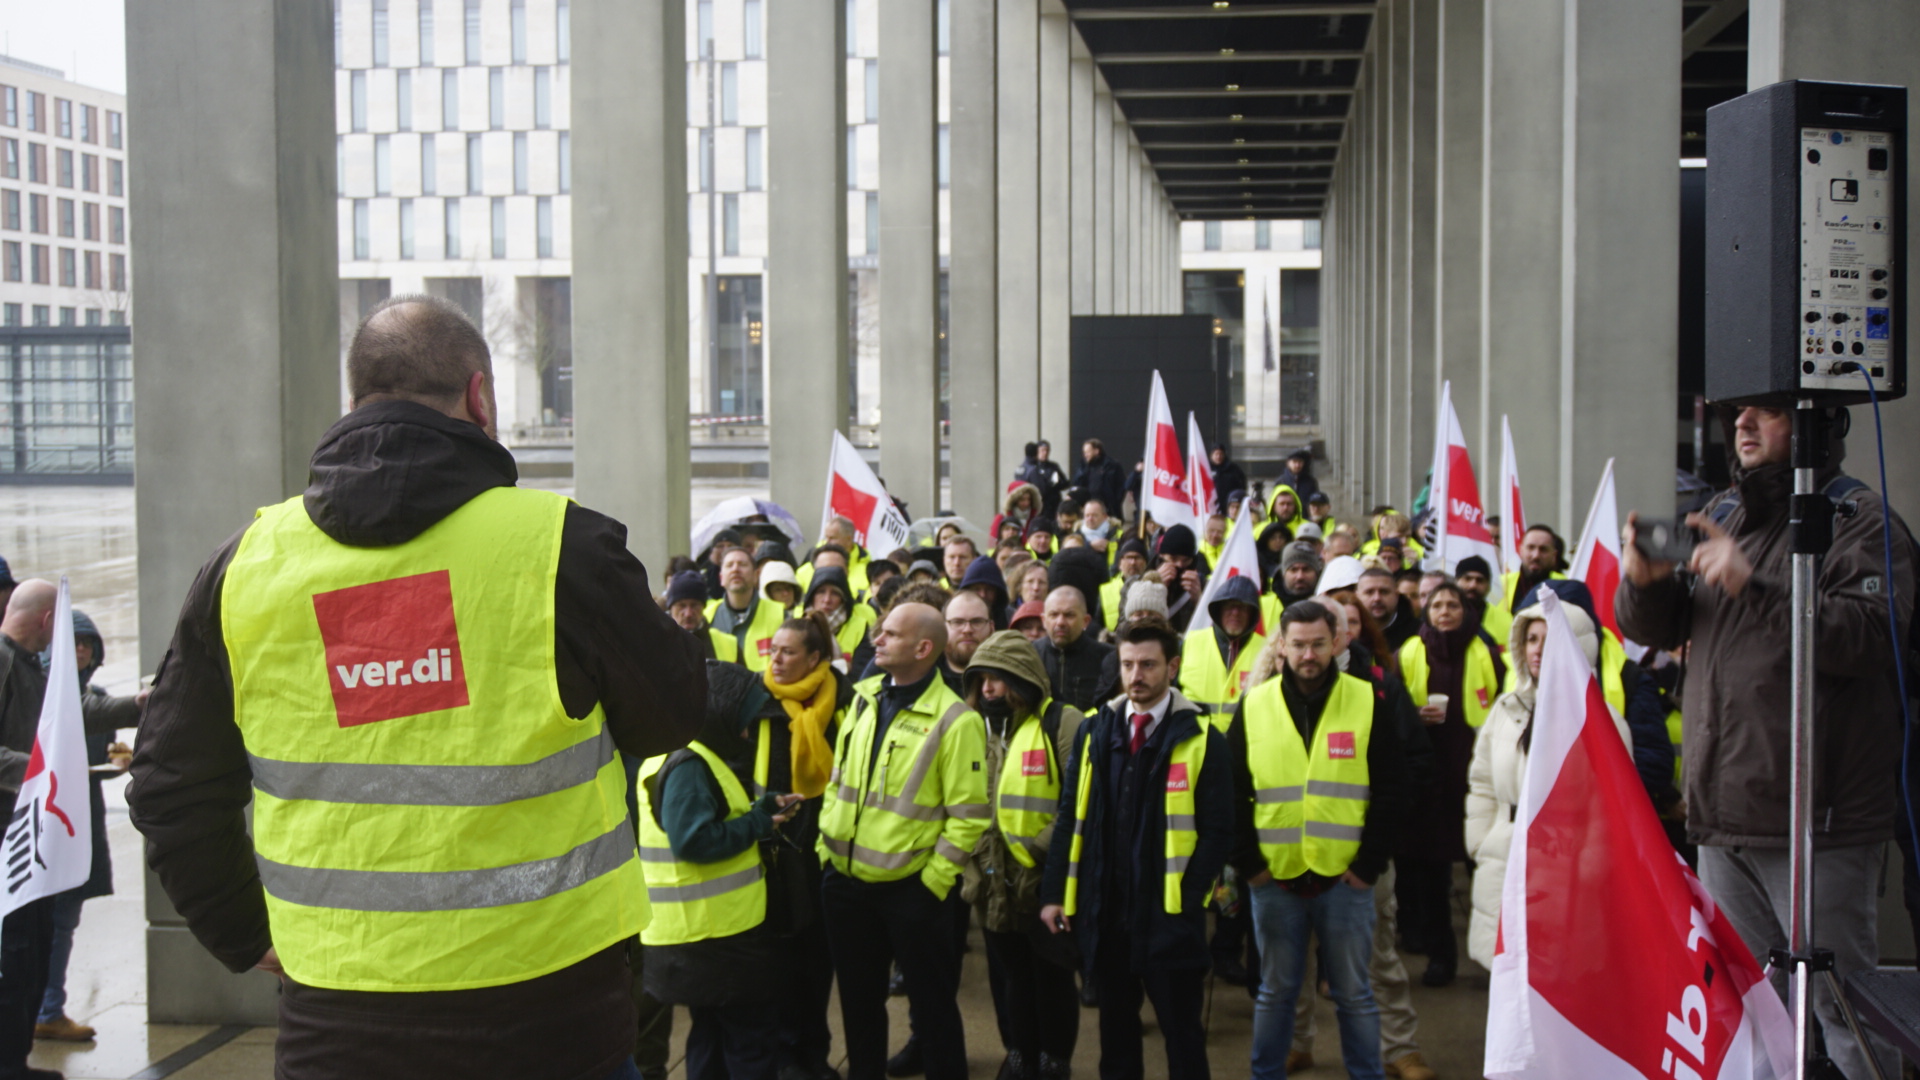 Flughafen Streik in Berlin: gemeinsam mit TVöD Beschäftigten streiken!